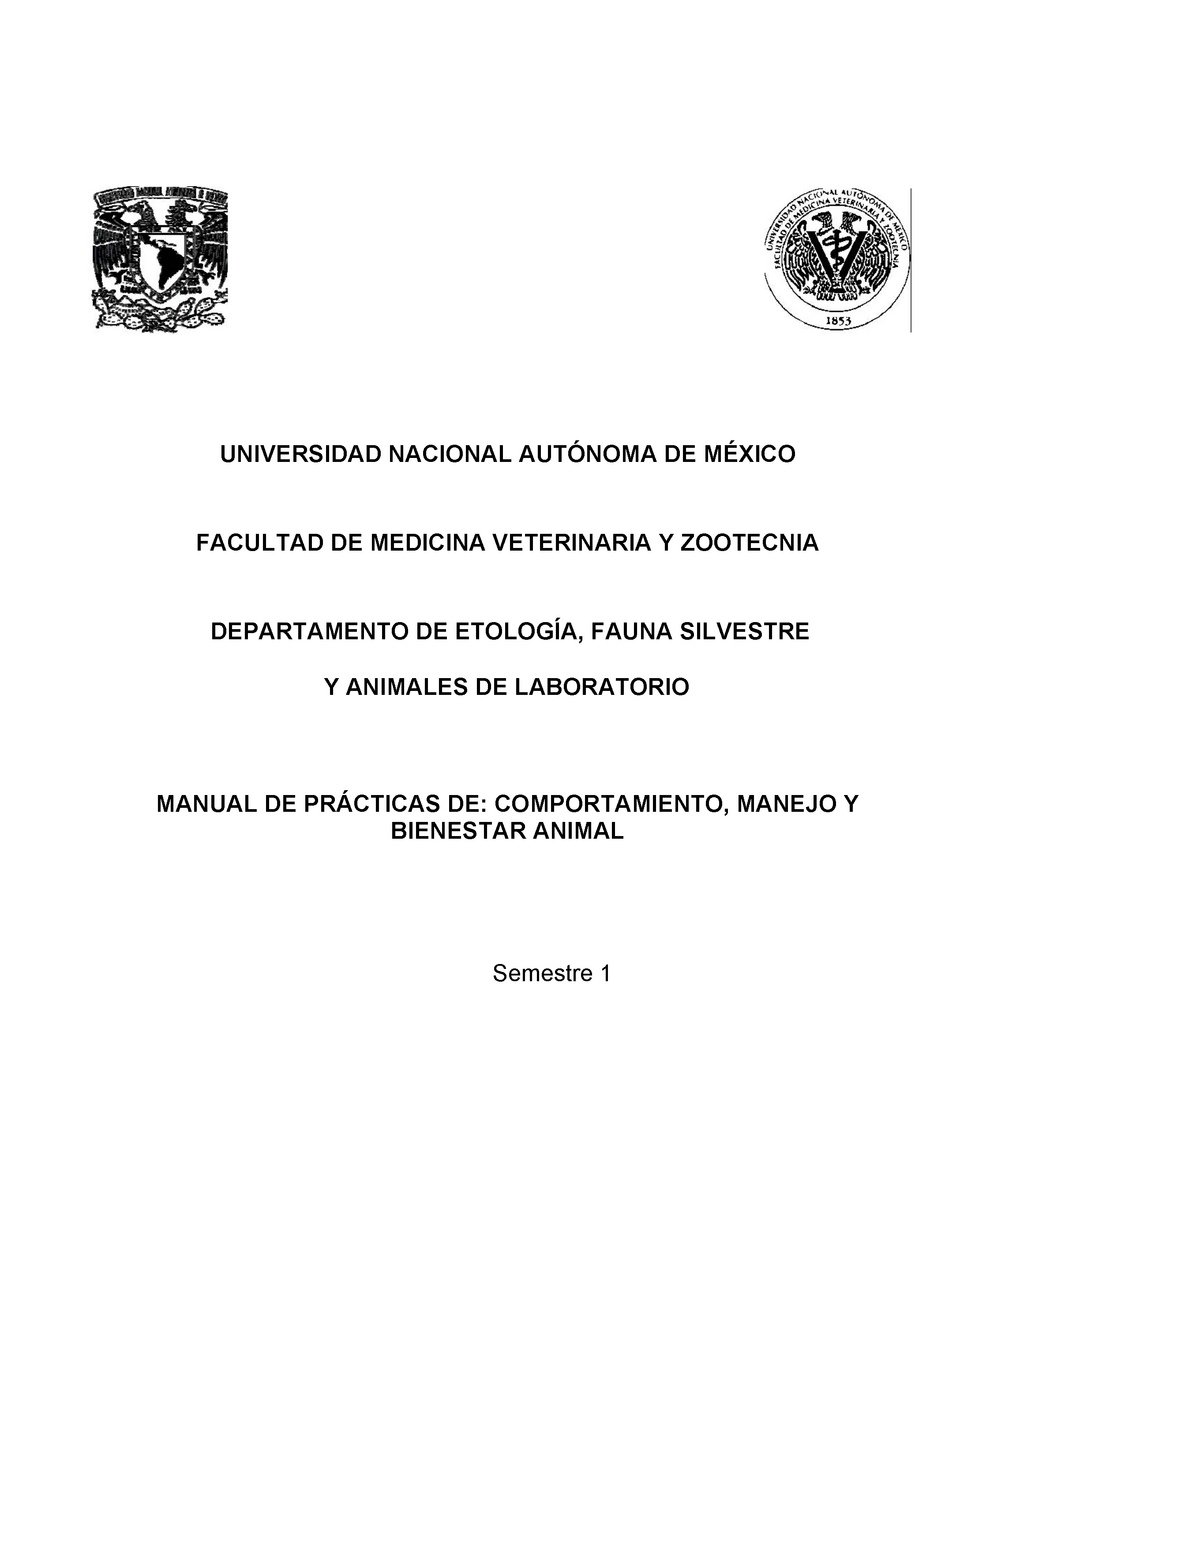 Manual de Practicas de Comportamiento, Manejo y Bienestar Animal -  UNIVERSIDAD NACIONAL AUTÓNOMA DE - Studocu